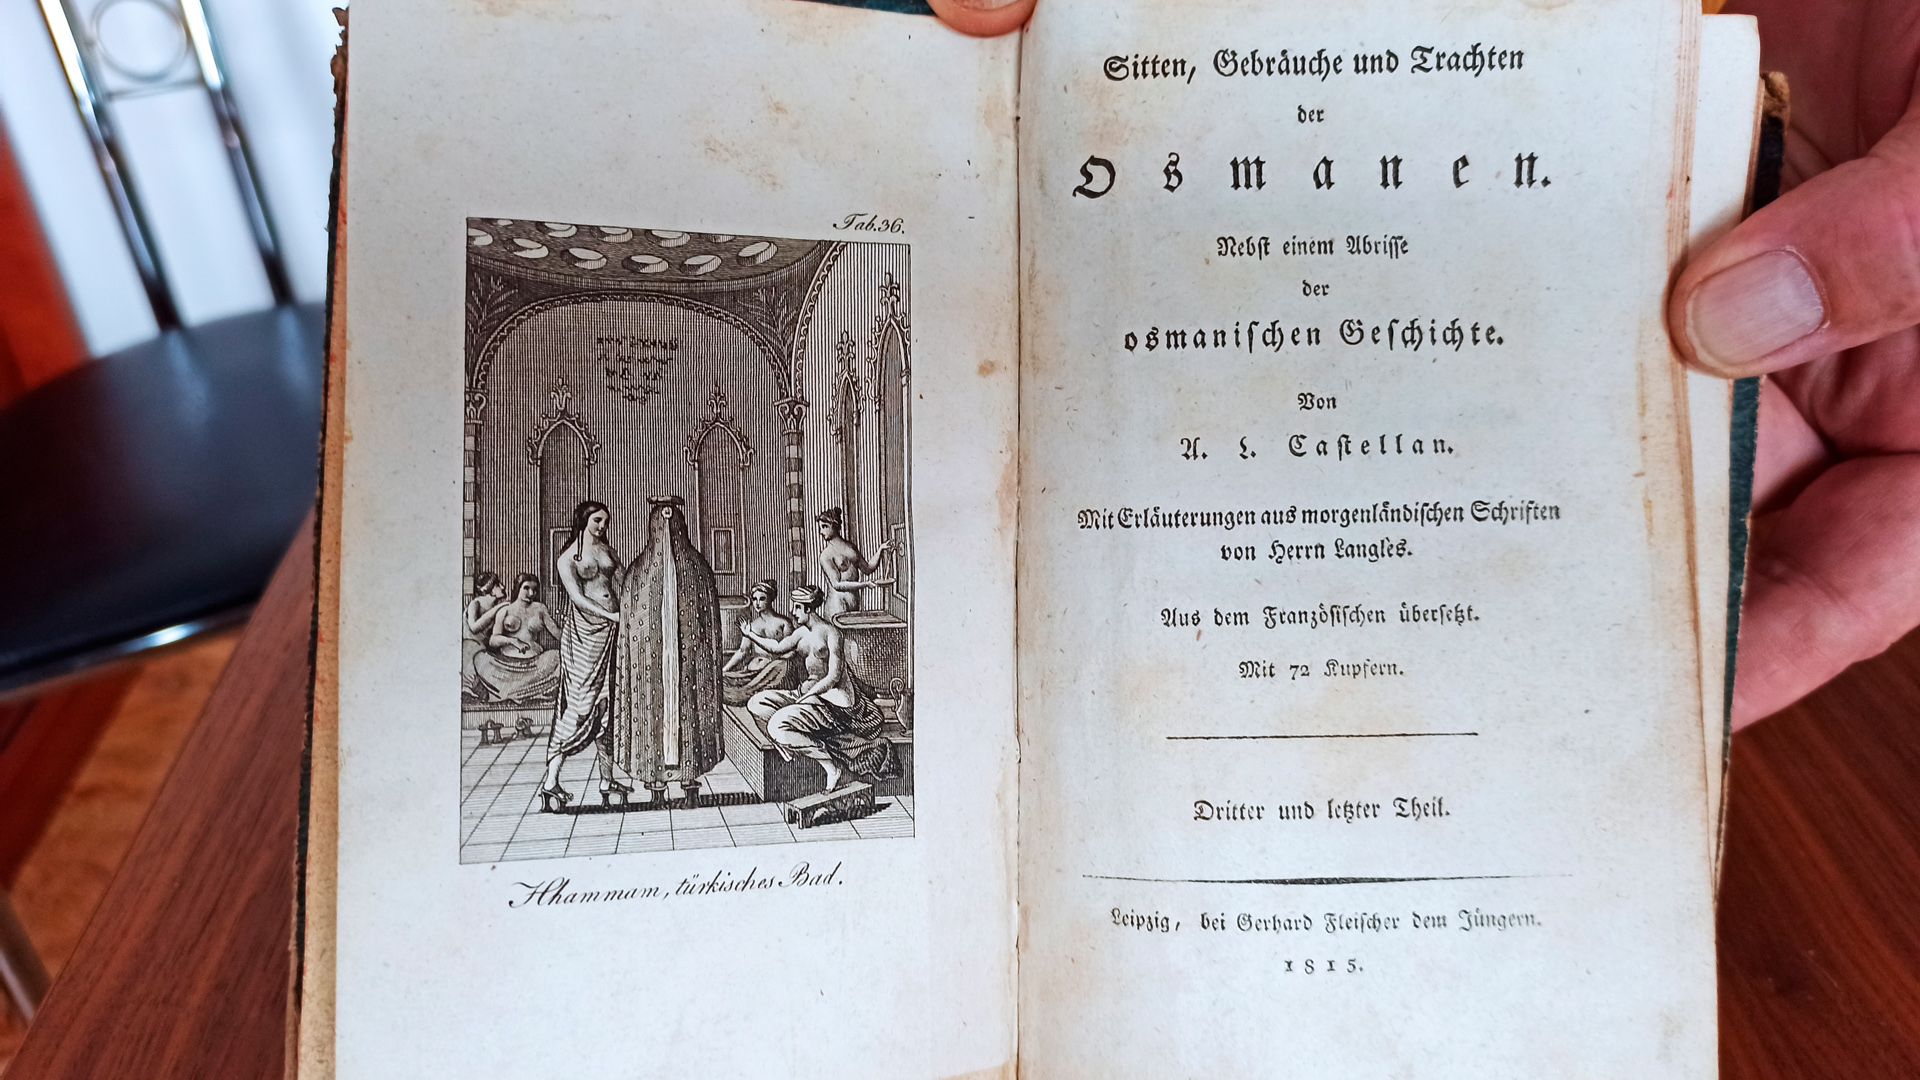 Kleines Buch ”Sitten und Gebräuche und Trachten der Osmanen”, Dritter und Letzter Theil, Leipzig, - Bild 2 aus 4